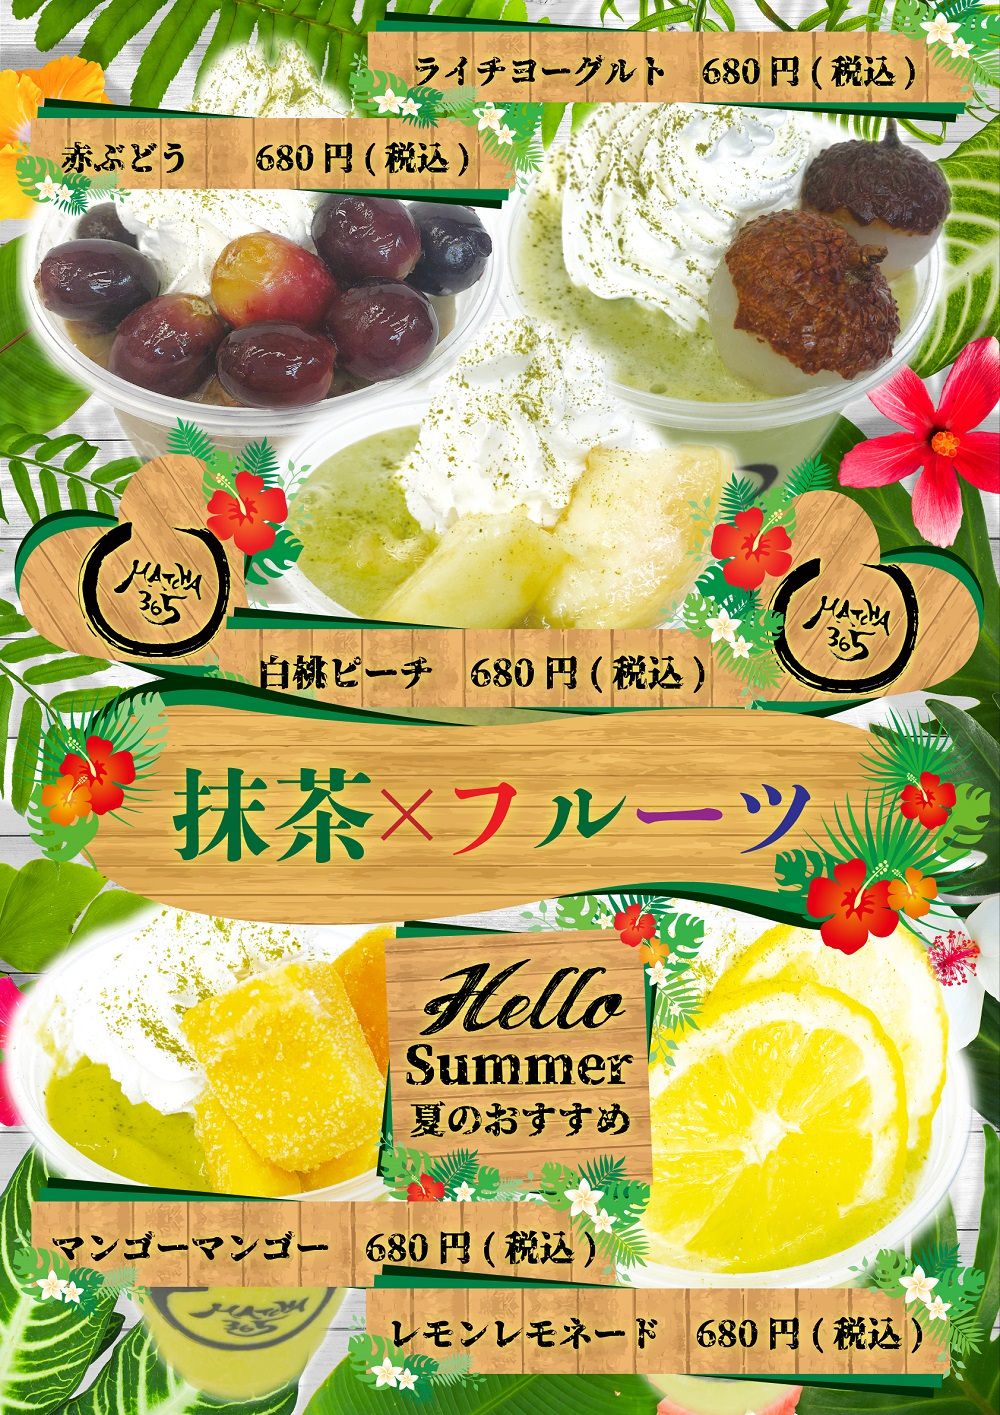 千葉県のチョコレート専門店から爽やかな夏限定商品が2種類登場！
レモン香る純白のロールケーキと、
夏の海をイメージした冷たいチョコレートドリンク